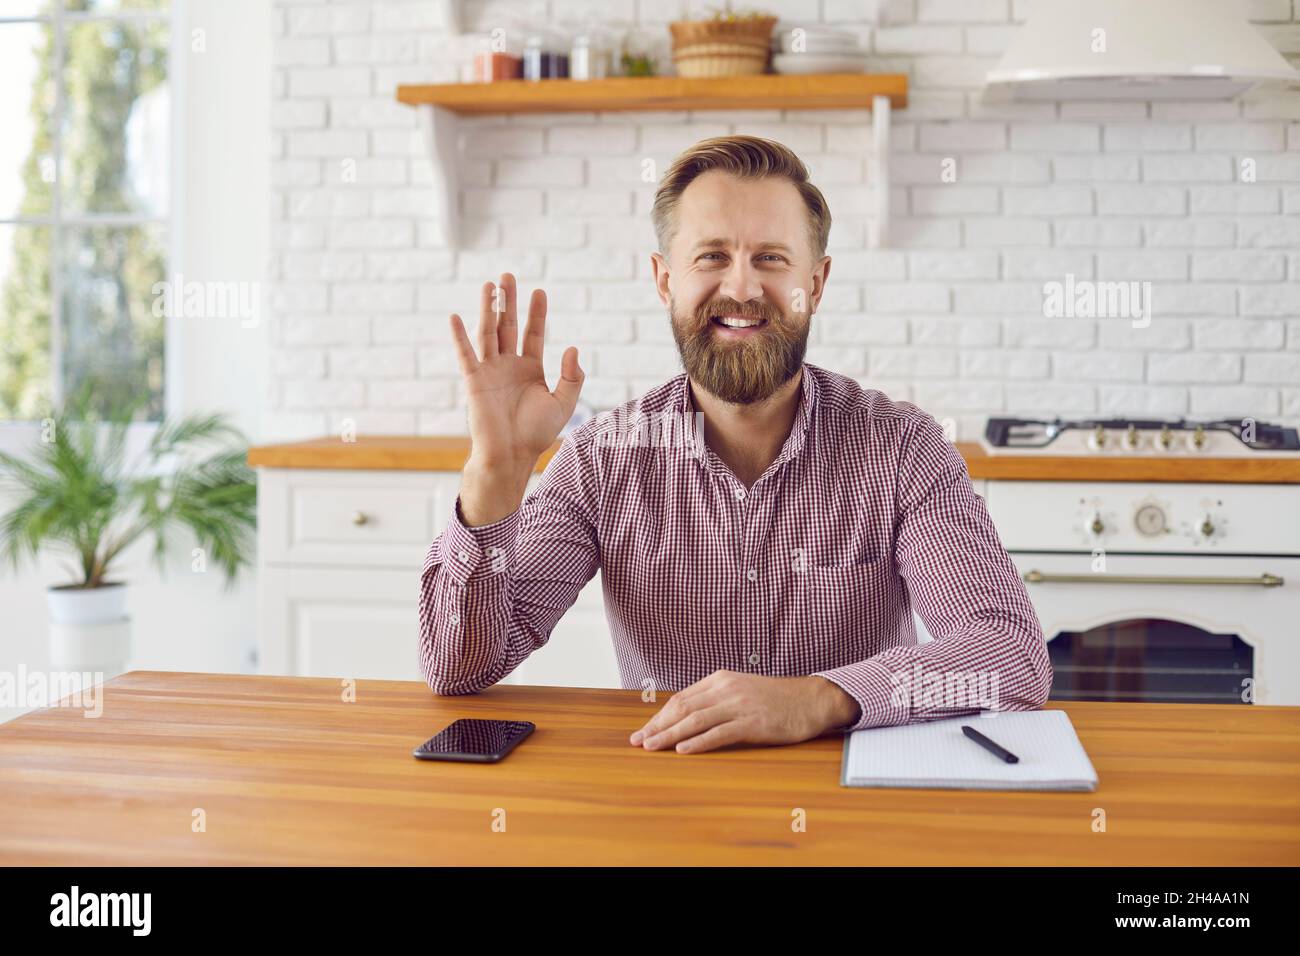 Freundlicher, fröhlicher Mann, der seine Hand vor der Webcam schwenkt und den Kunden bei einem Online-Meeting begrüßt. Stockfoto